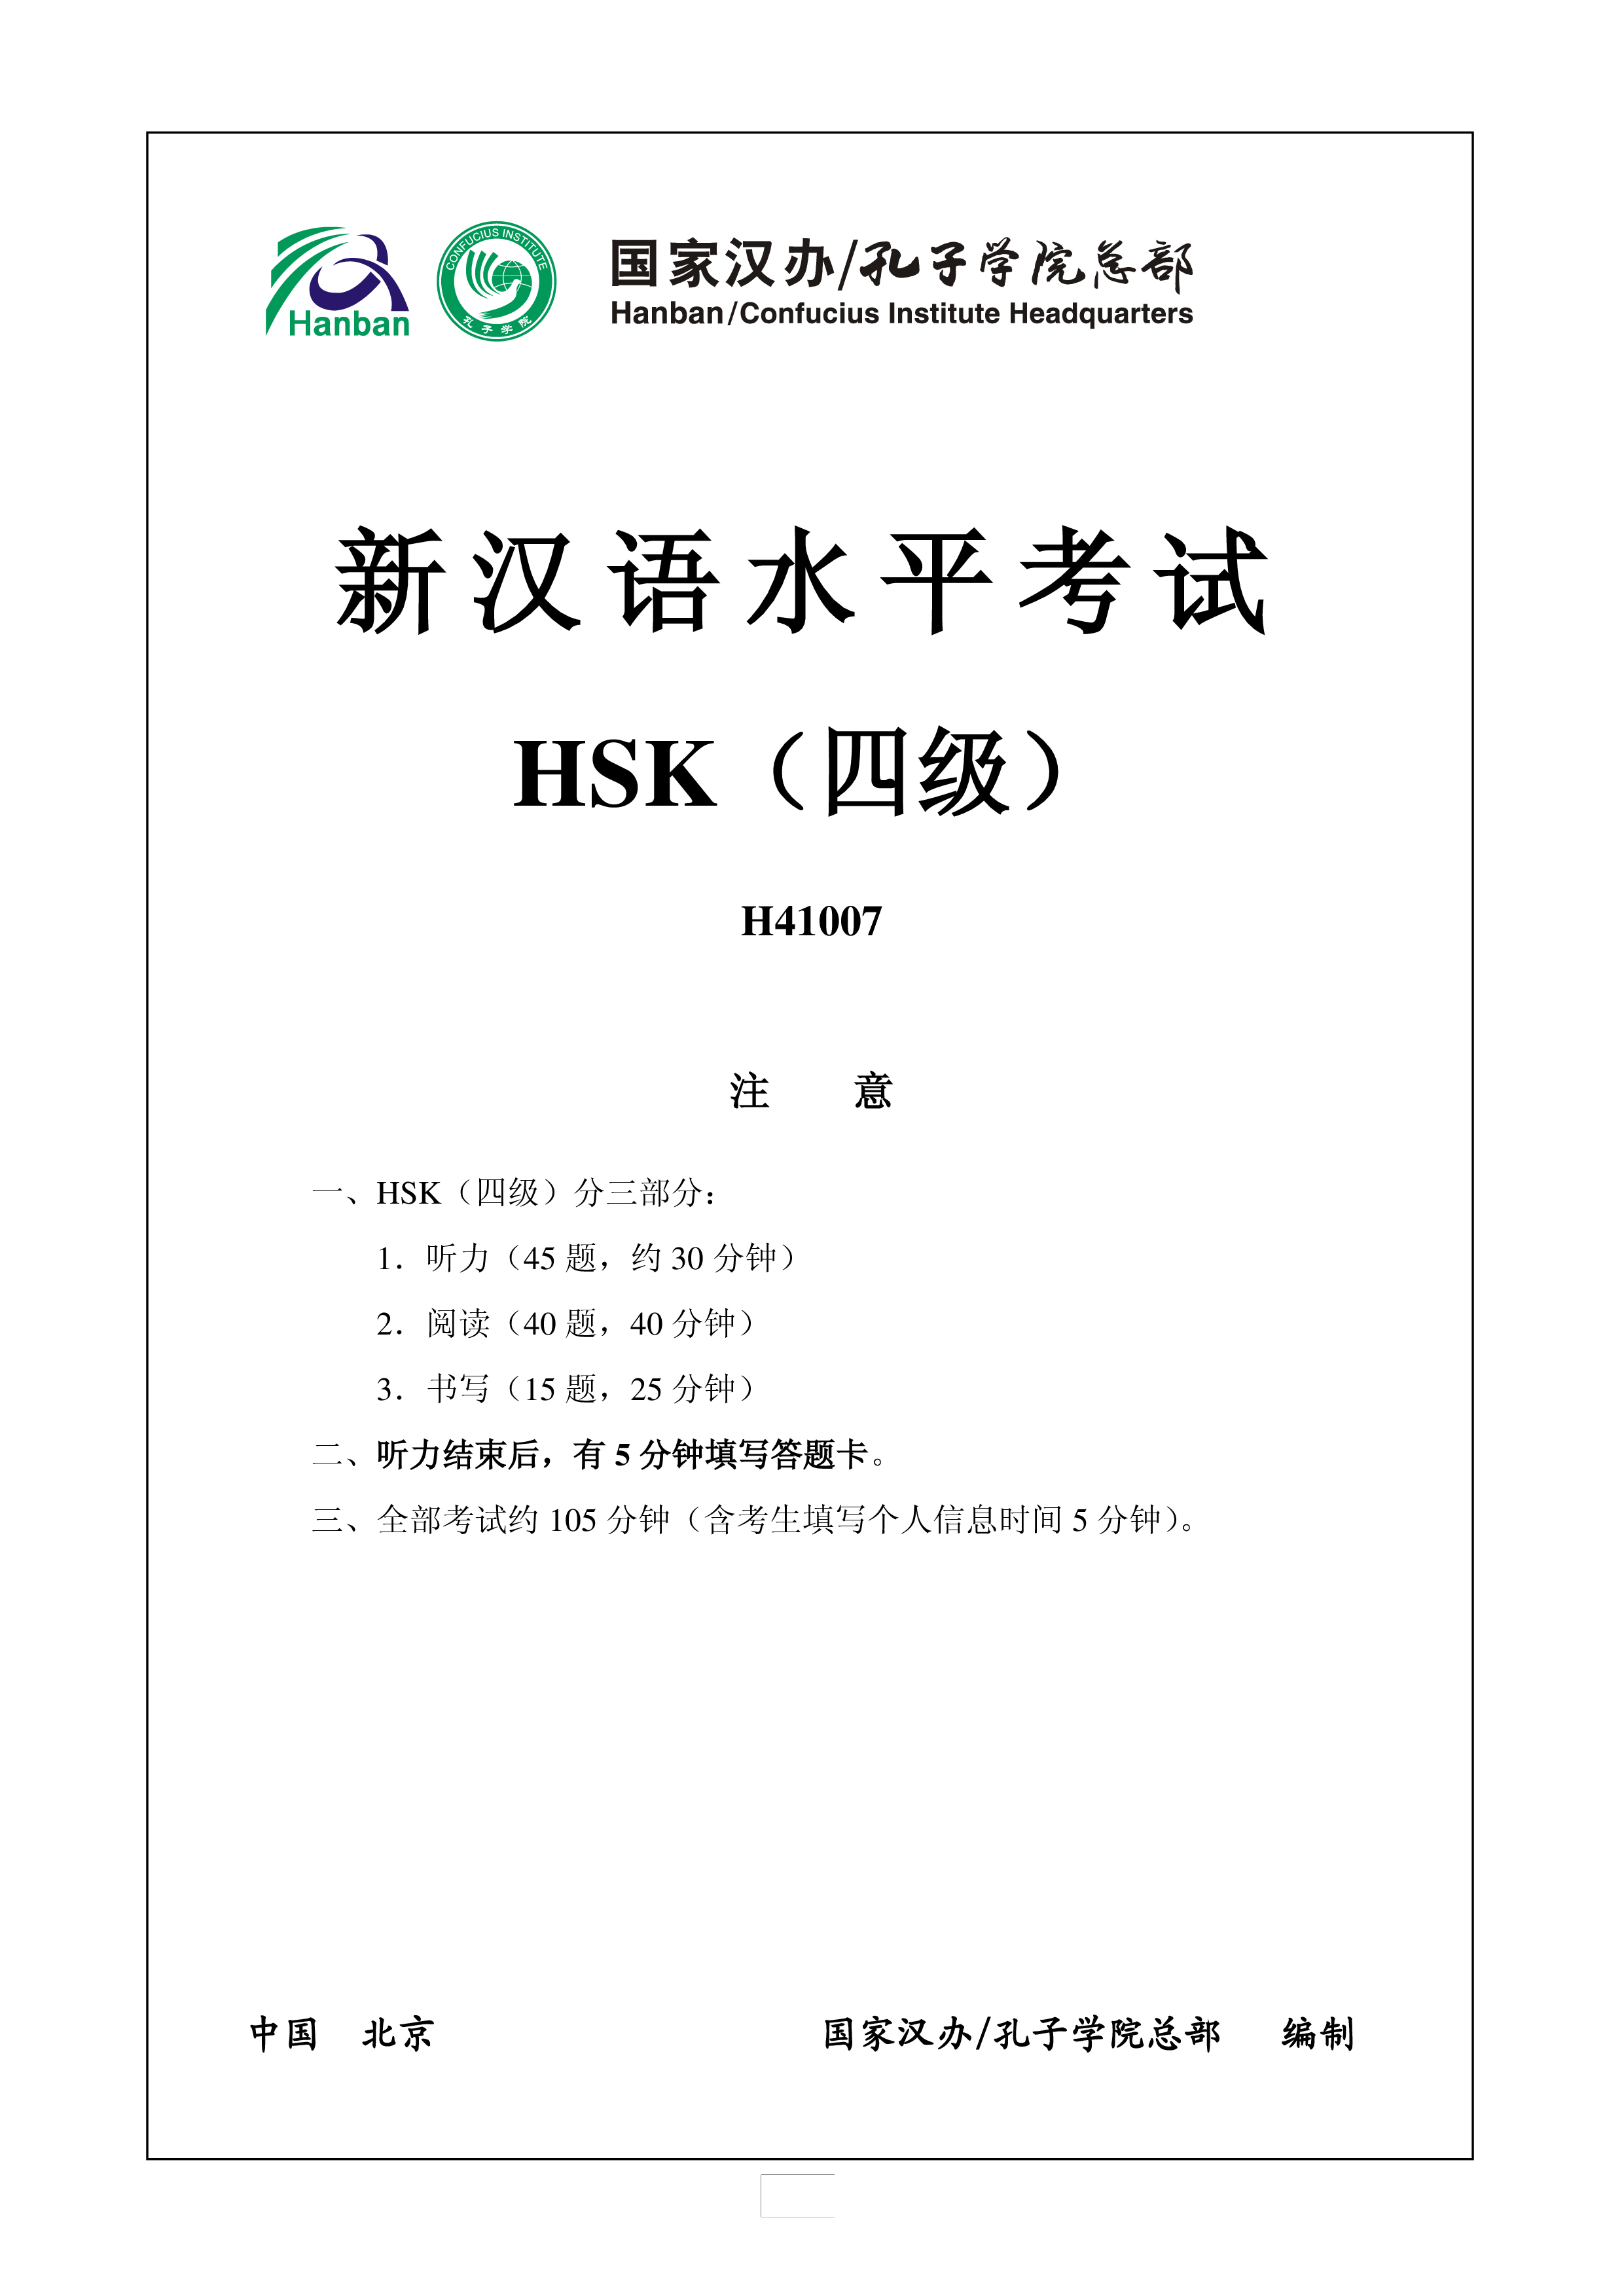 新汉语水平hsk四级考试h41007模拟真题考试音频和答案 modèles